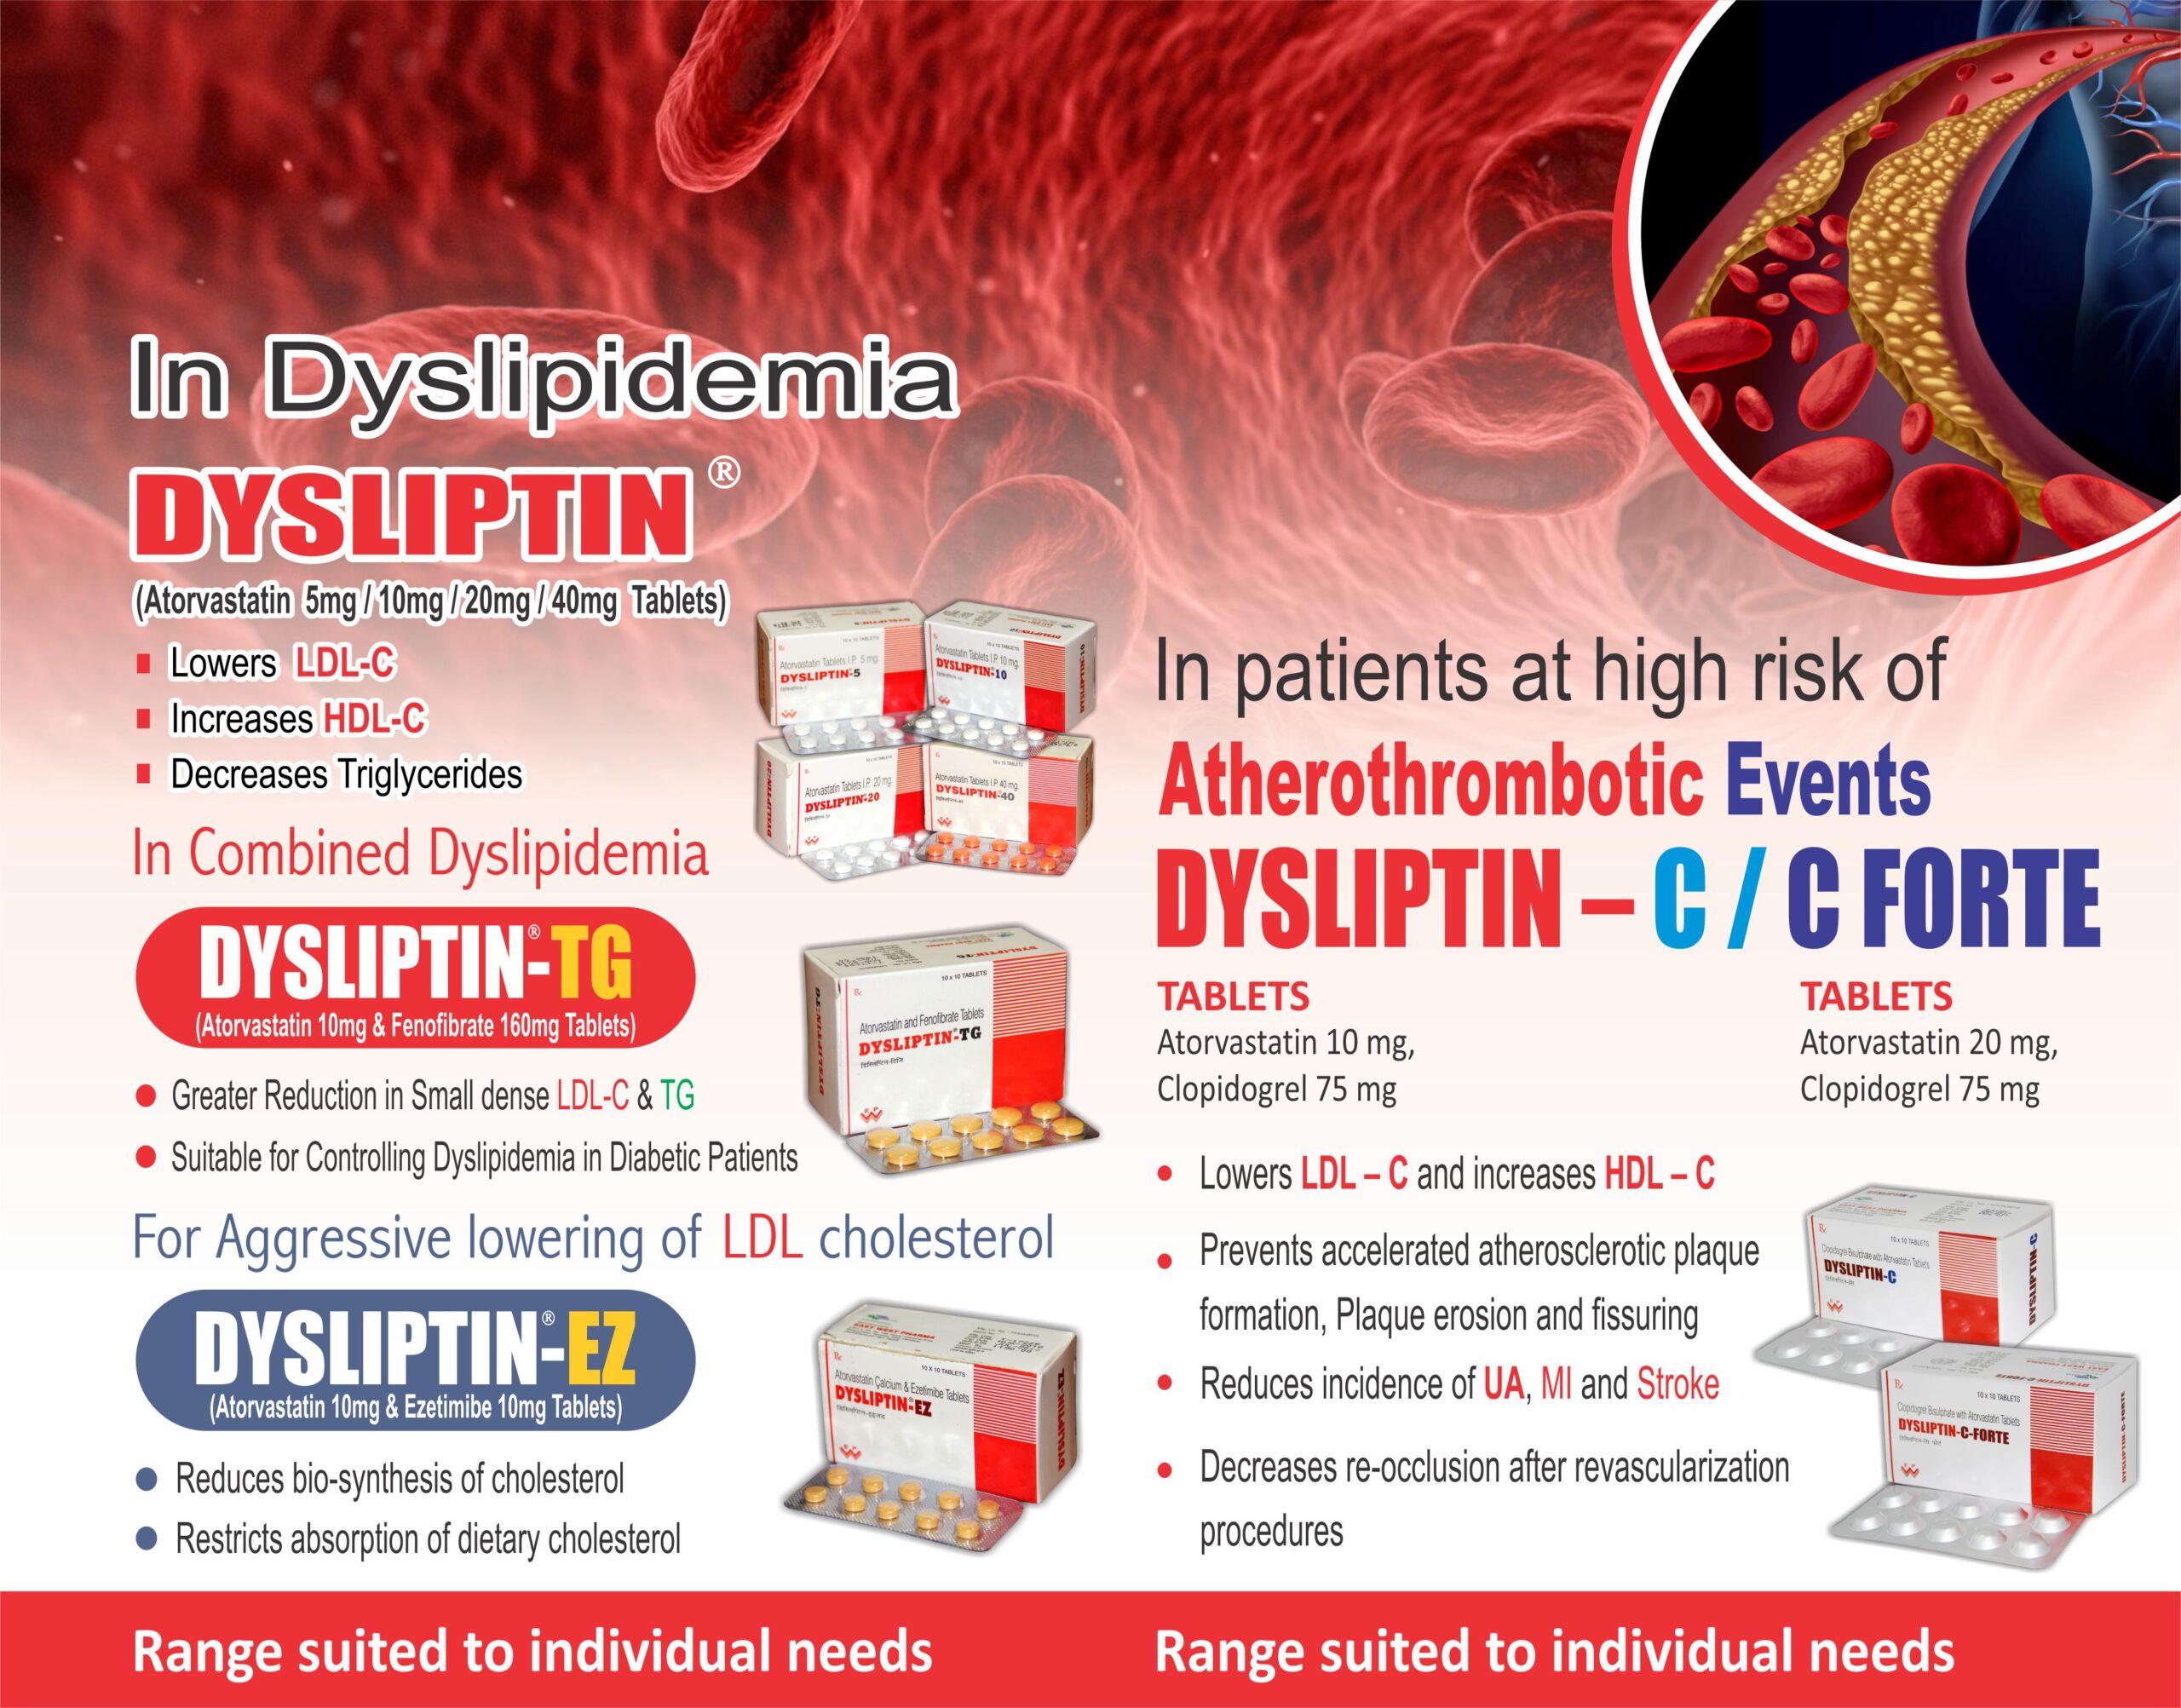 Dysliptin